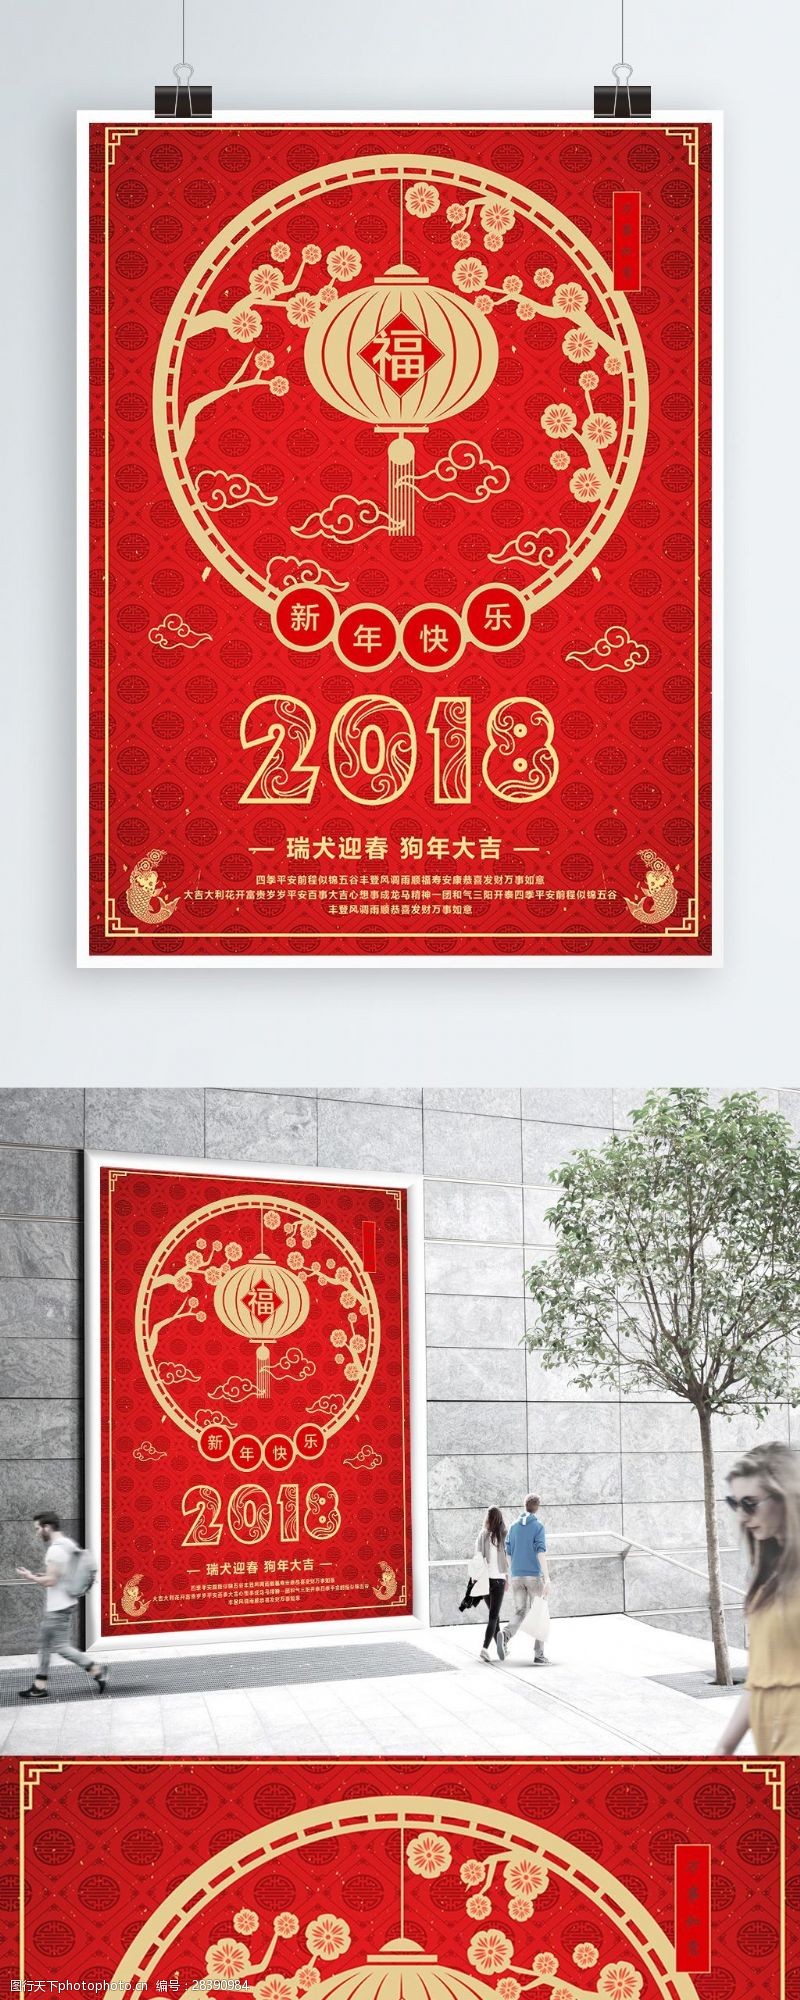 新婚快乐红色喜庆元旦春节促销商业海报设计